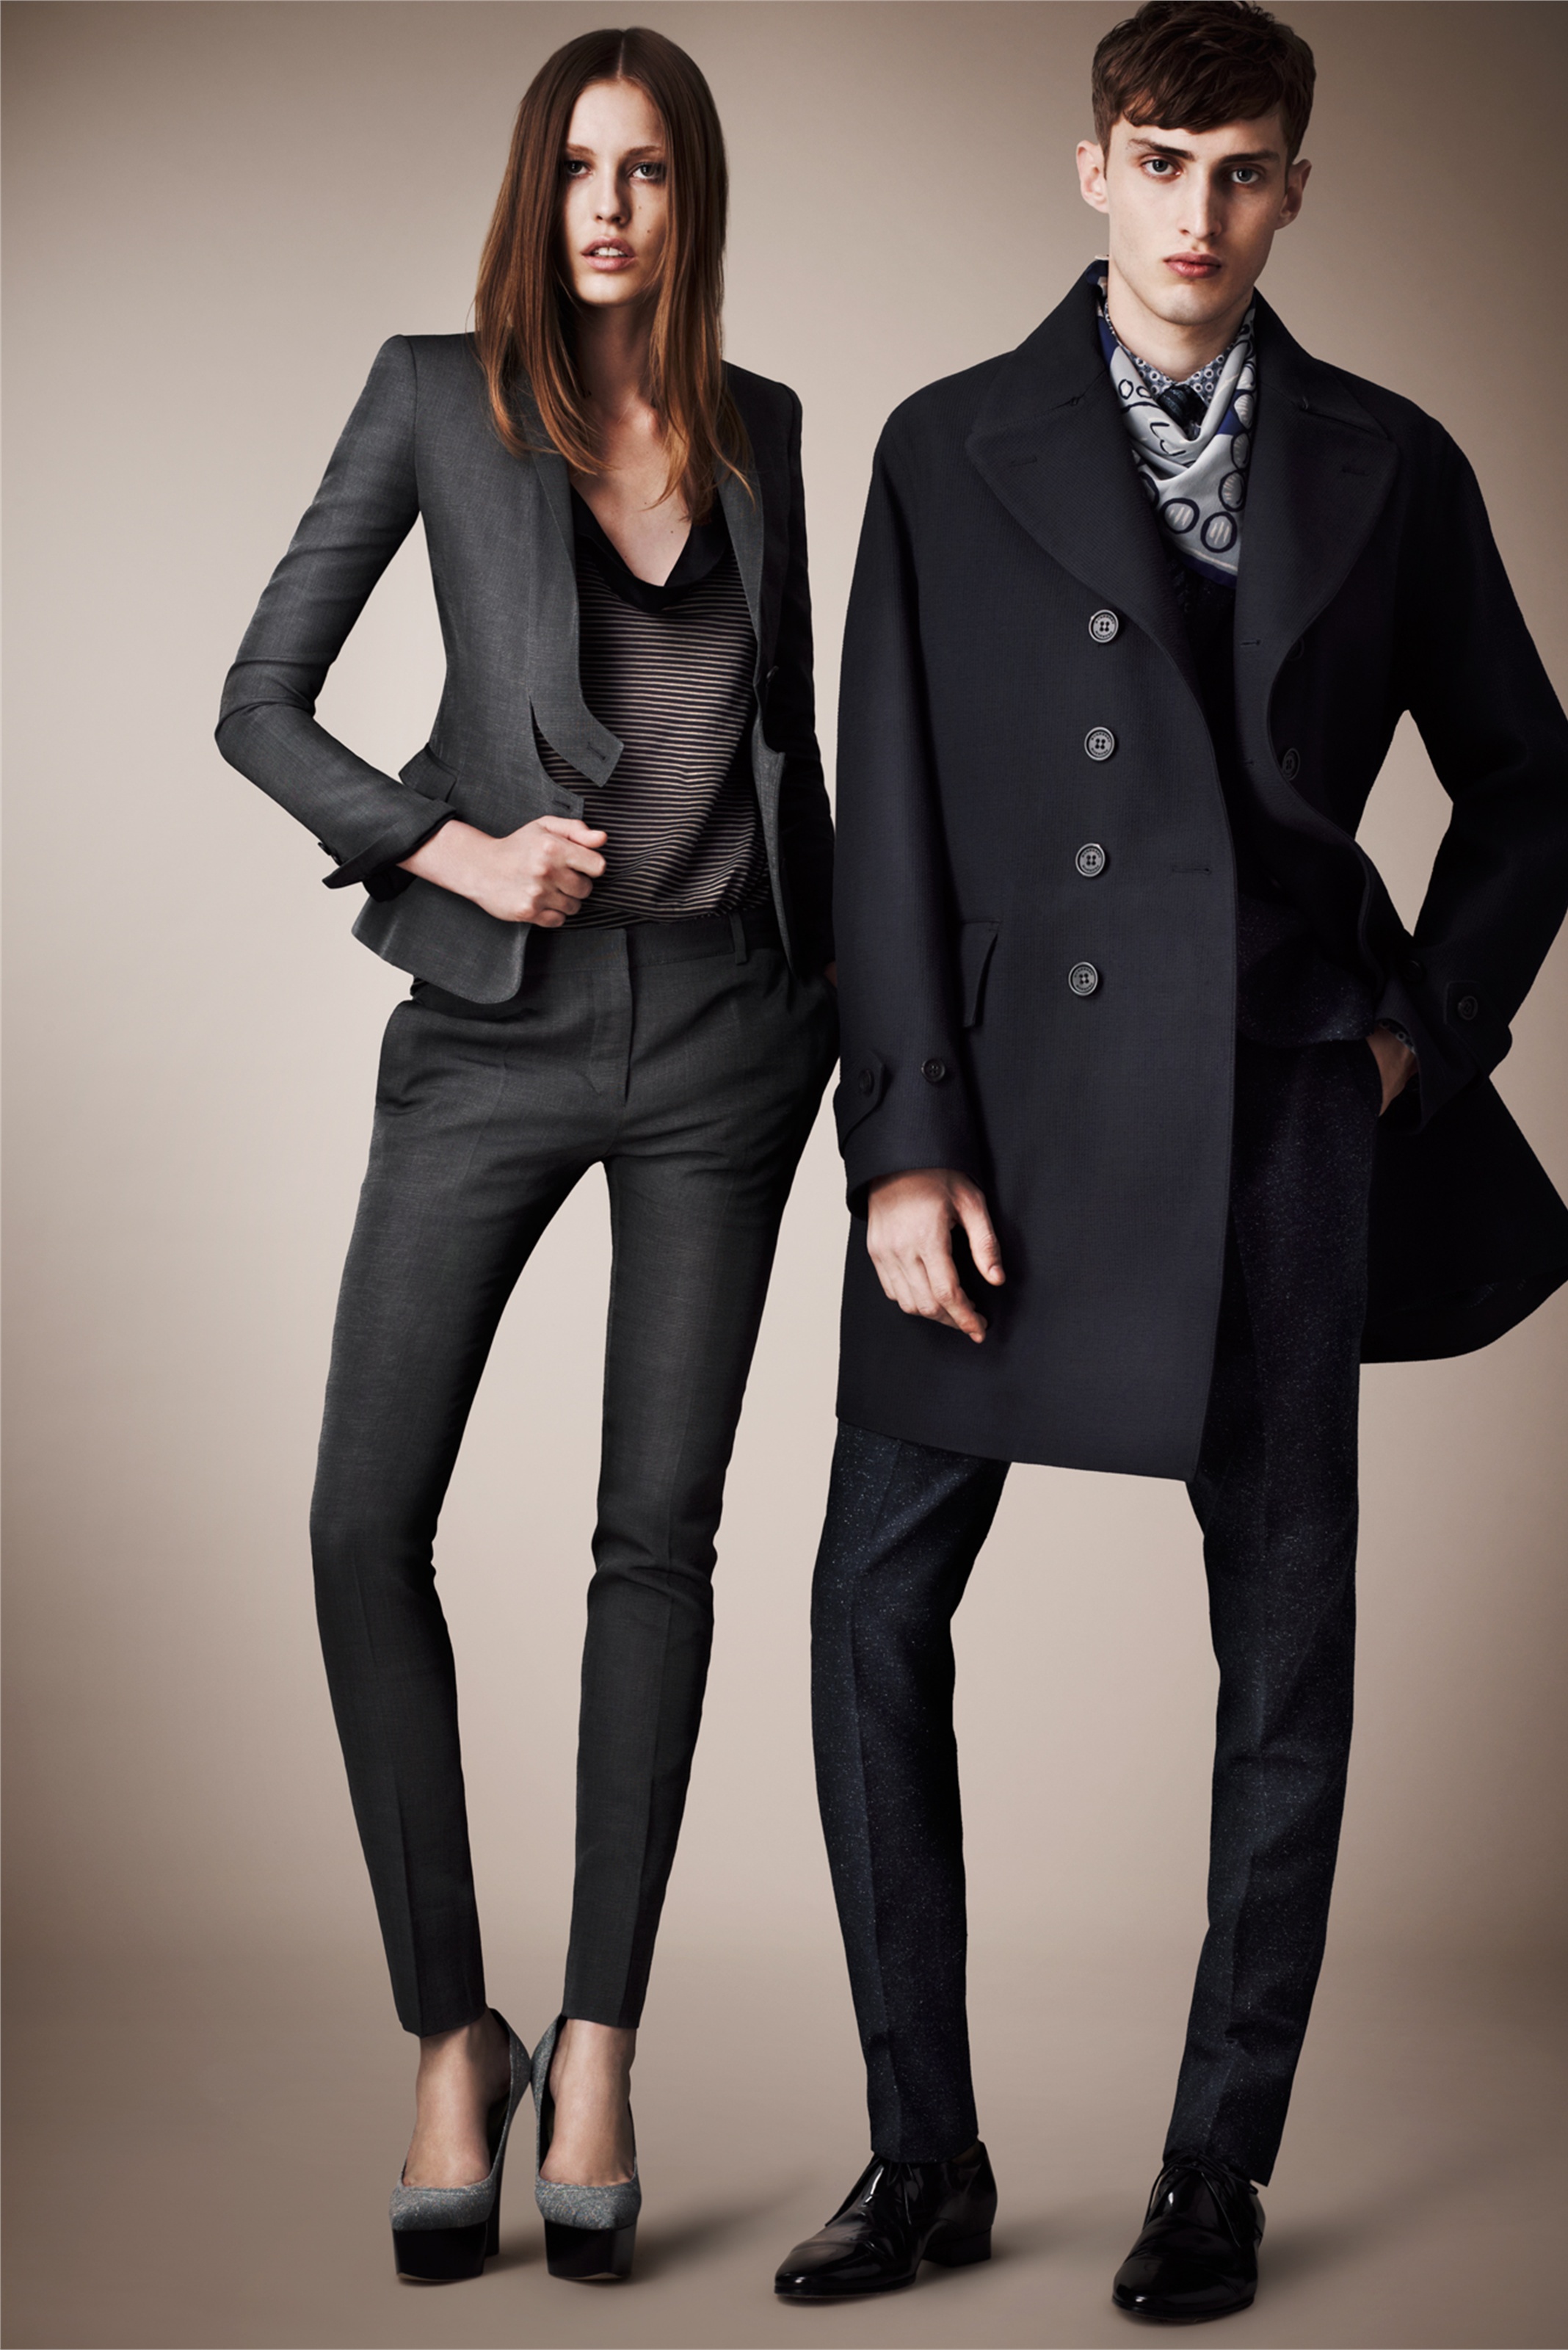 Костюм унисекс. Burberry Prorsum коллекция 2013. Классический стиль одежды. Классическая одежда для девушек. Модель в классическом костюме.